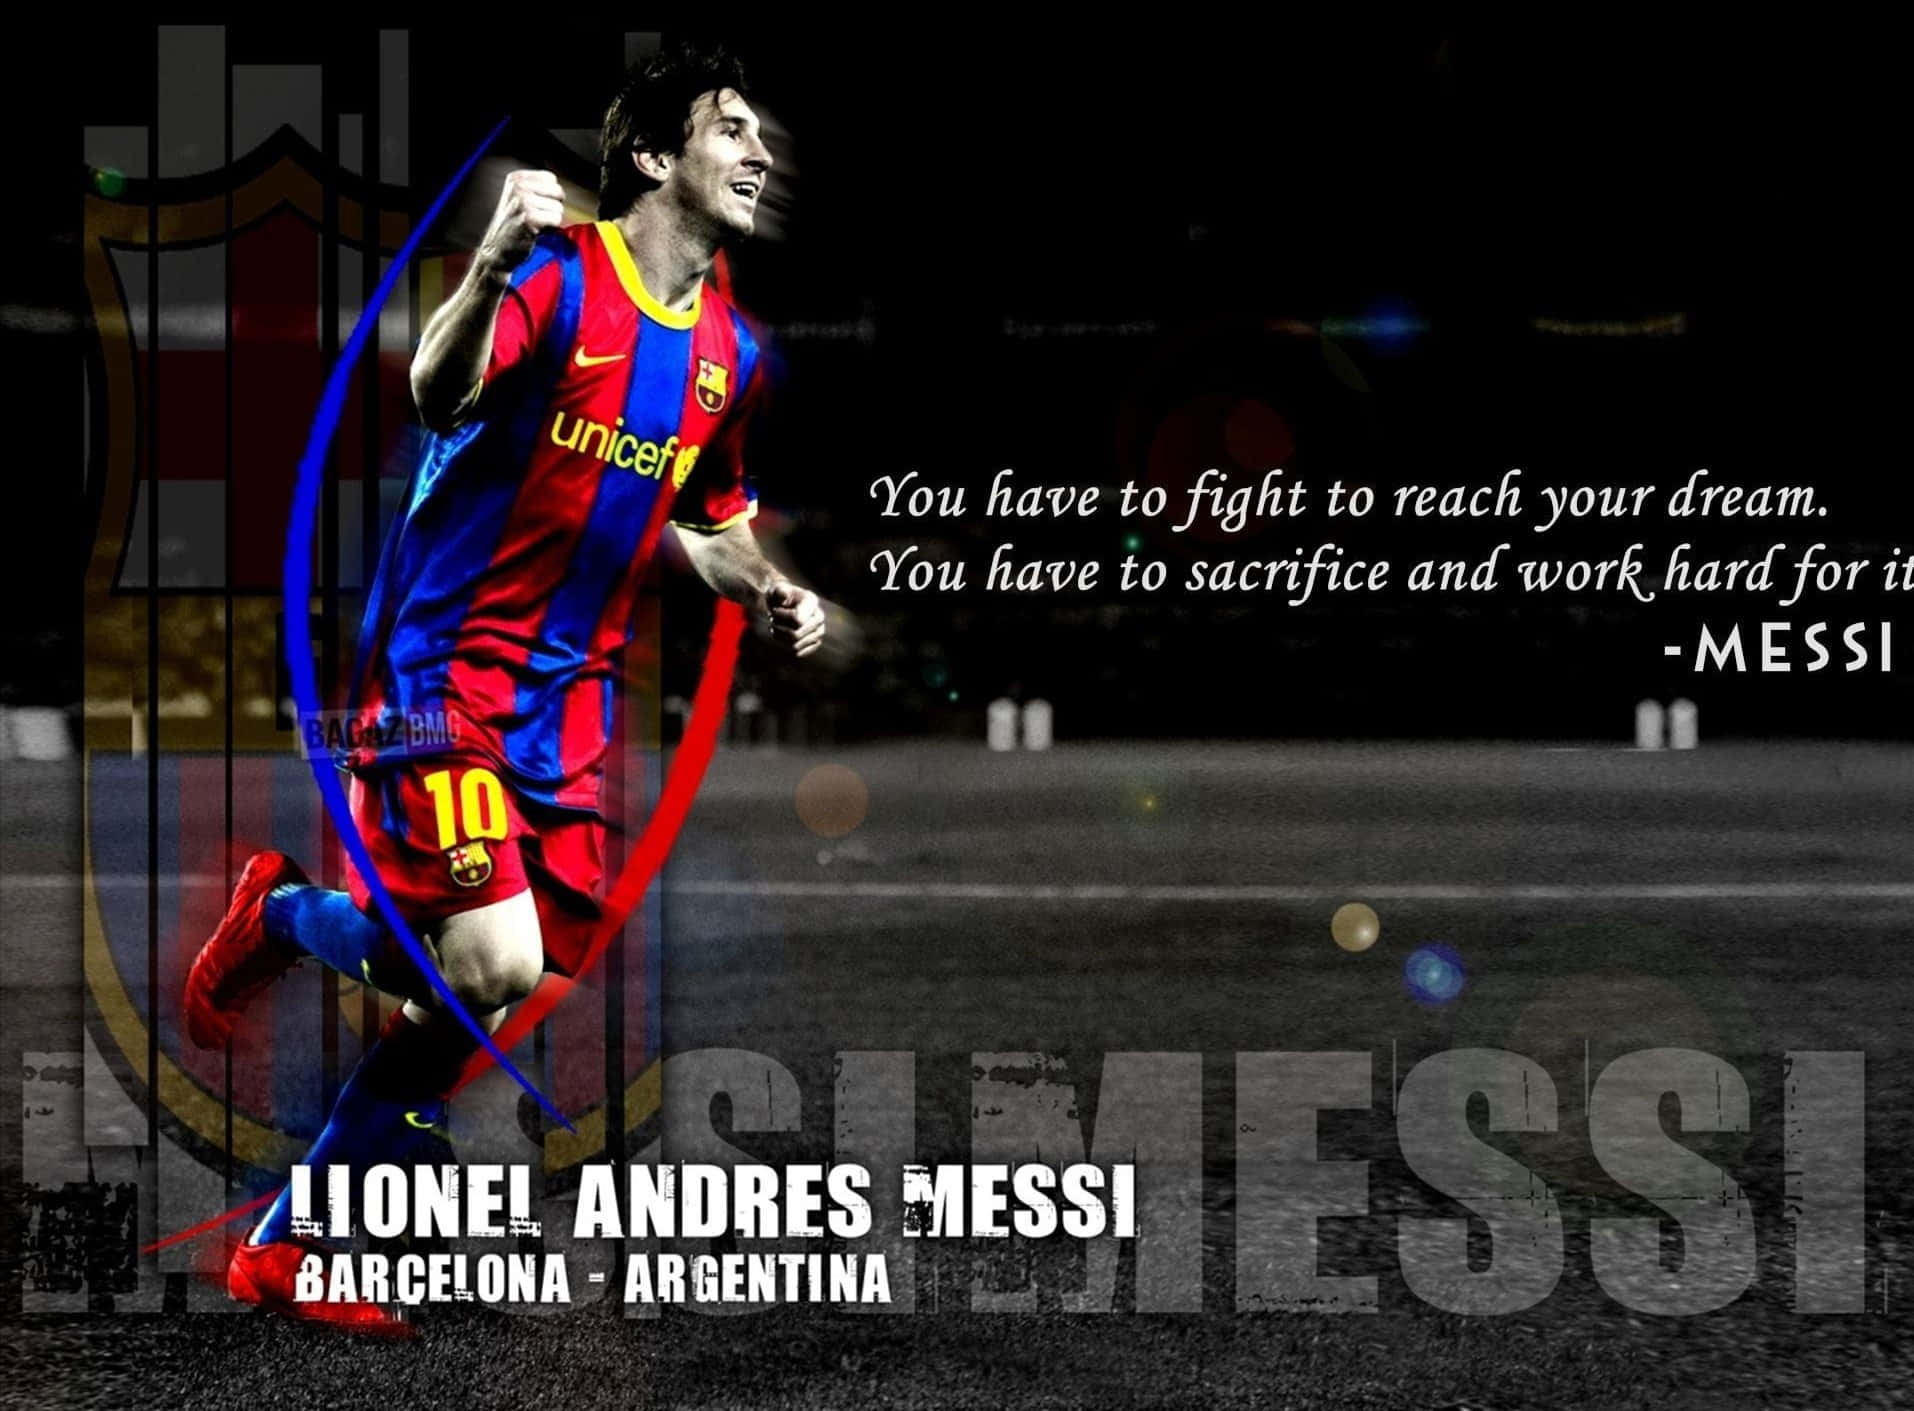 Hãy cùng xem hình nền Messi đầy cảm hứng này để thêm động lực và năng lượng tích cực trong công việc và cuộc sống của bạn.